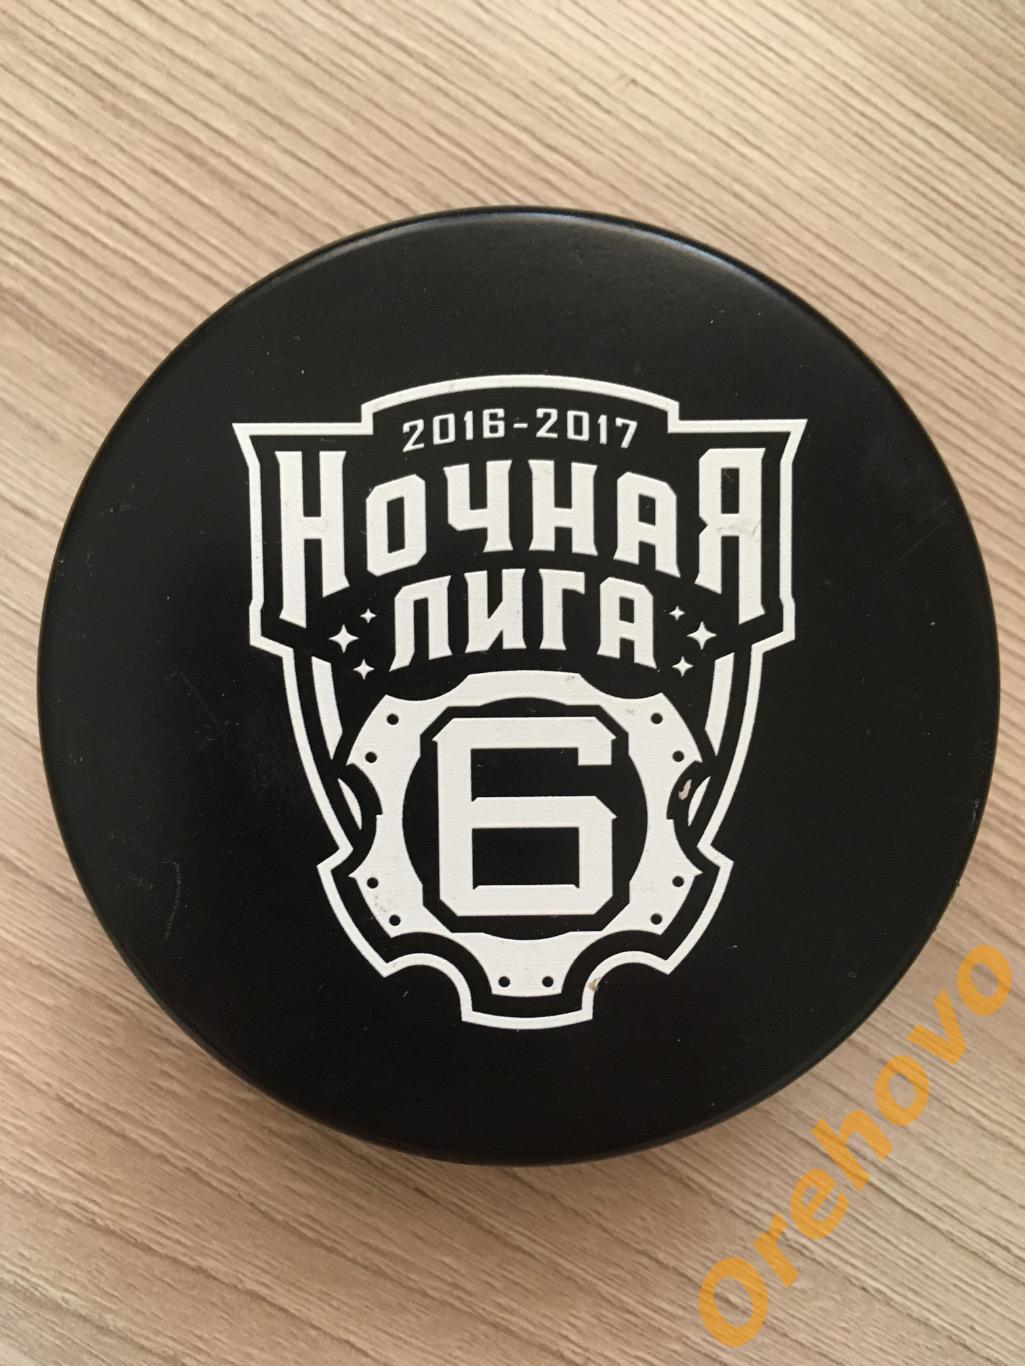 Шайба Ночная хоккейная Лига сезон 2016/2017 (сувенир) 1